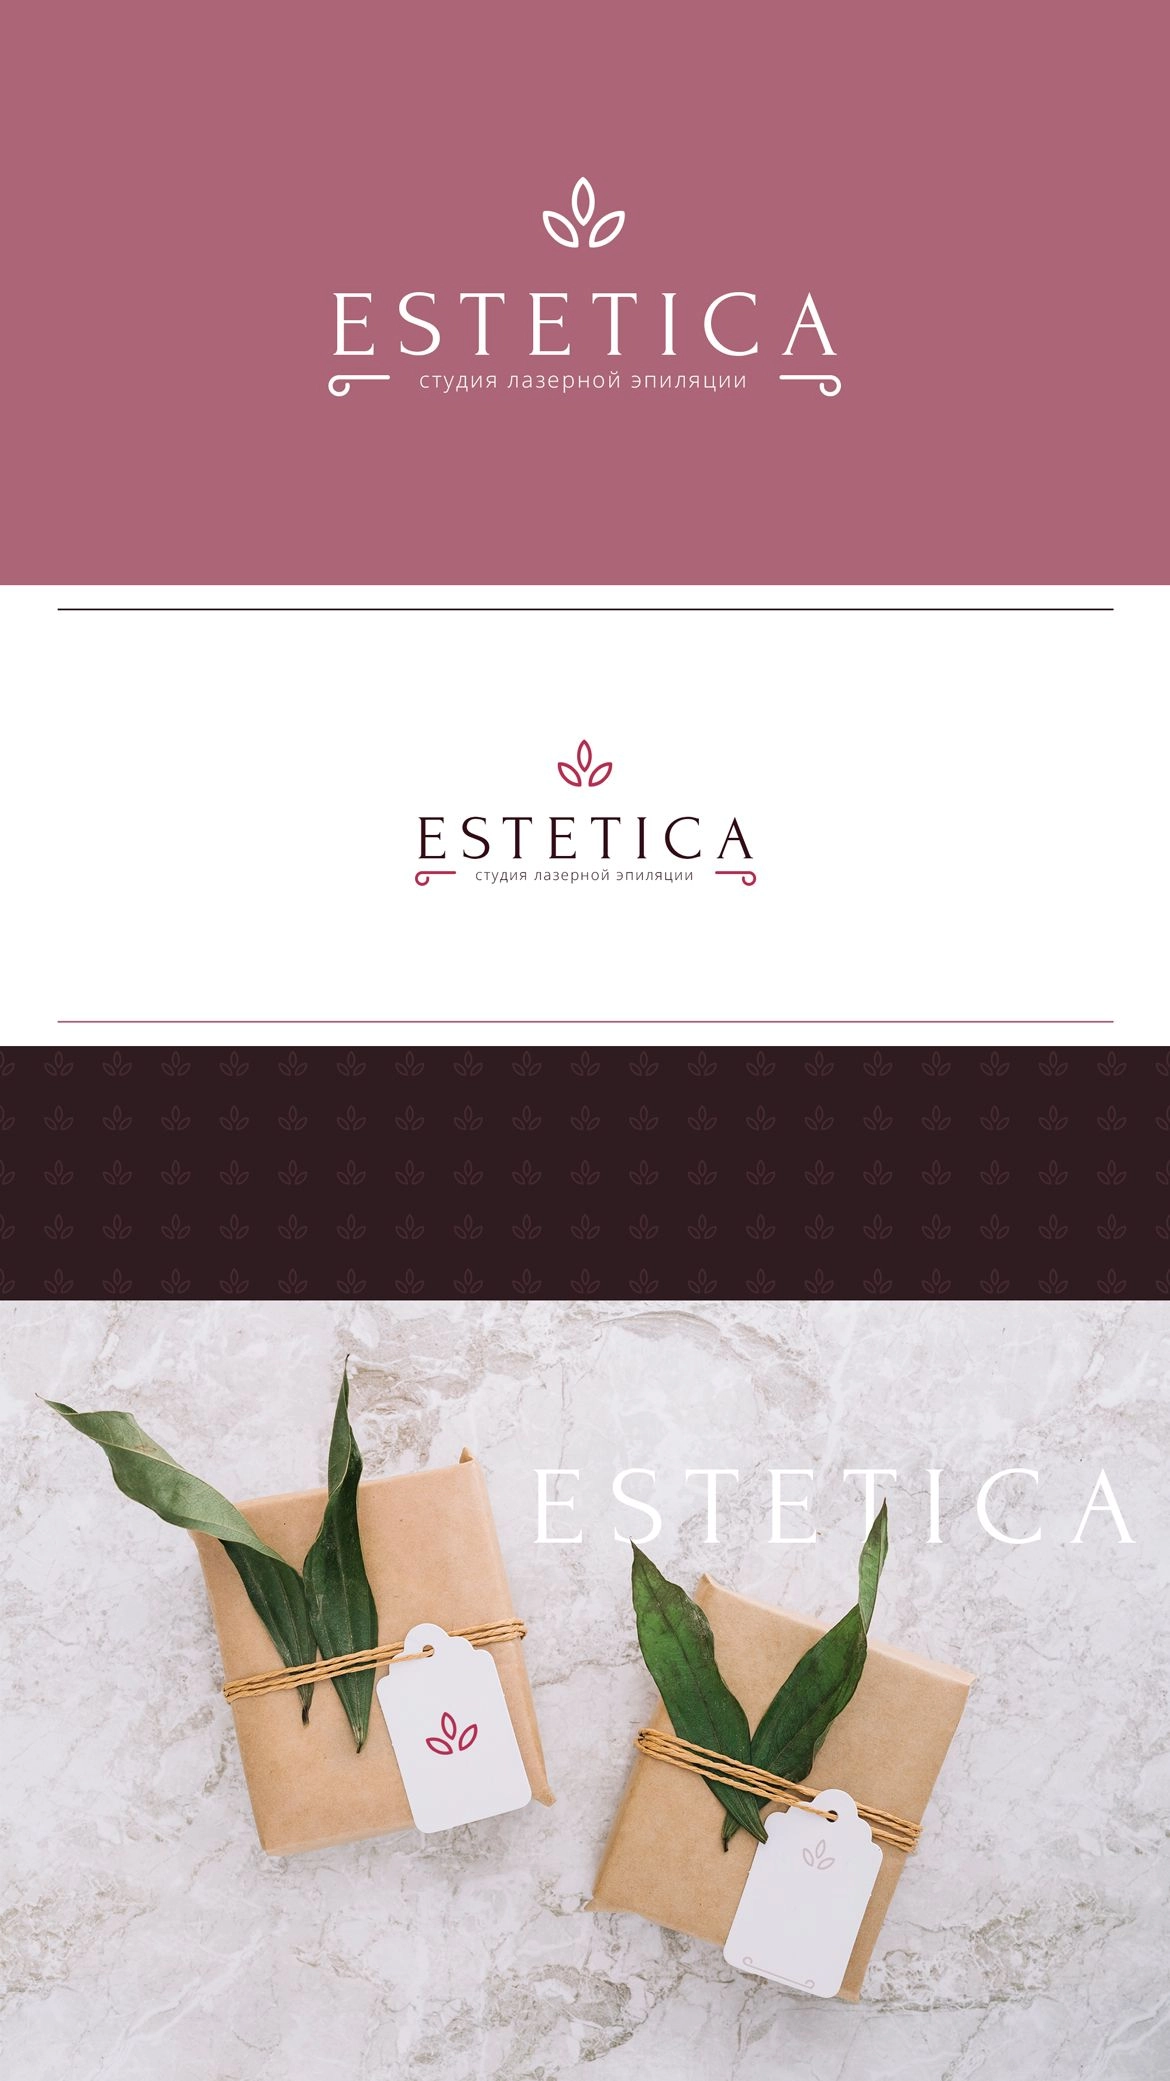 Estetica_logo2